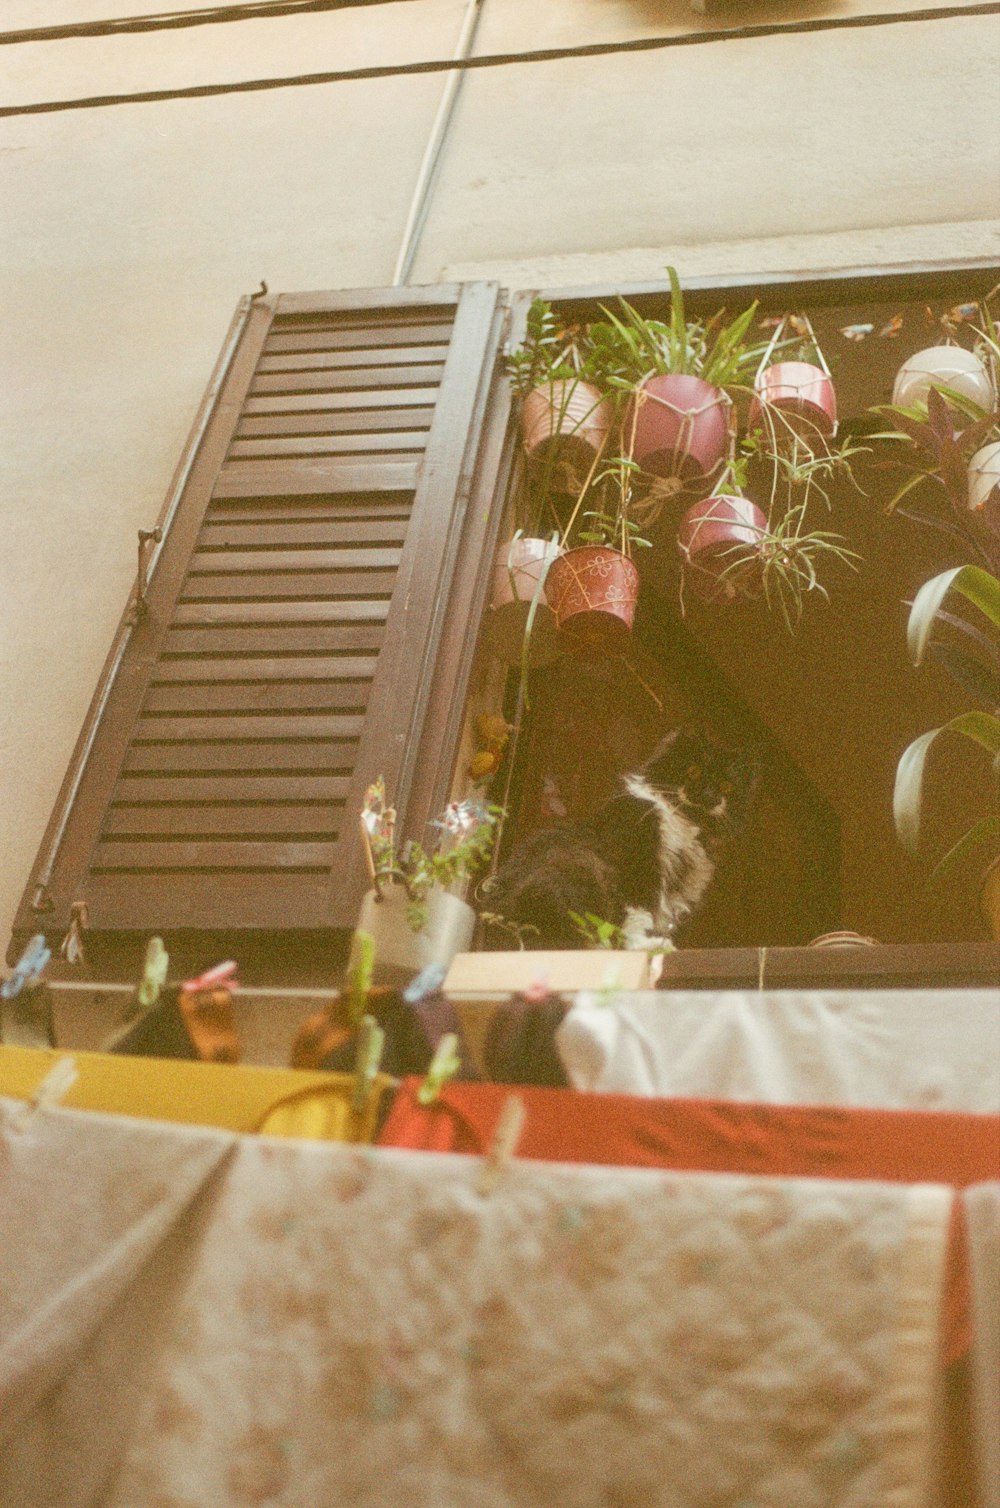 Eine Katze, die auf einem Fensterbrett neben einem Pflanzenstrauß sitzt